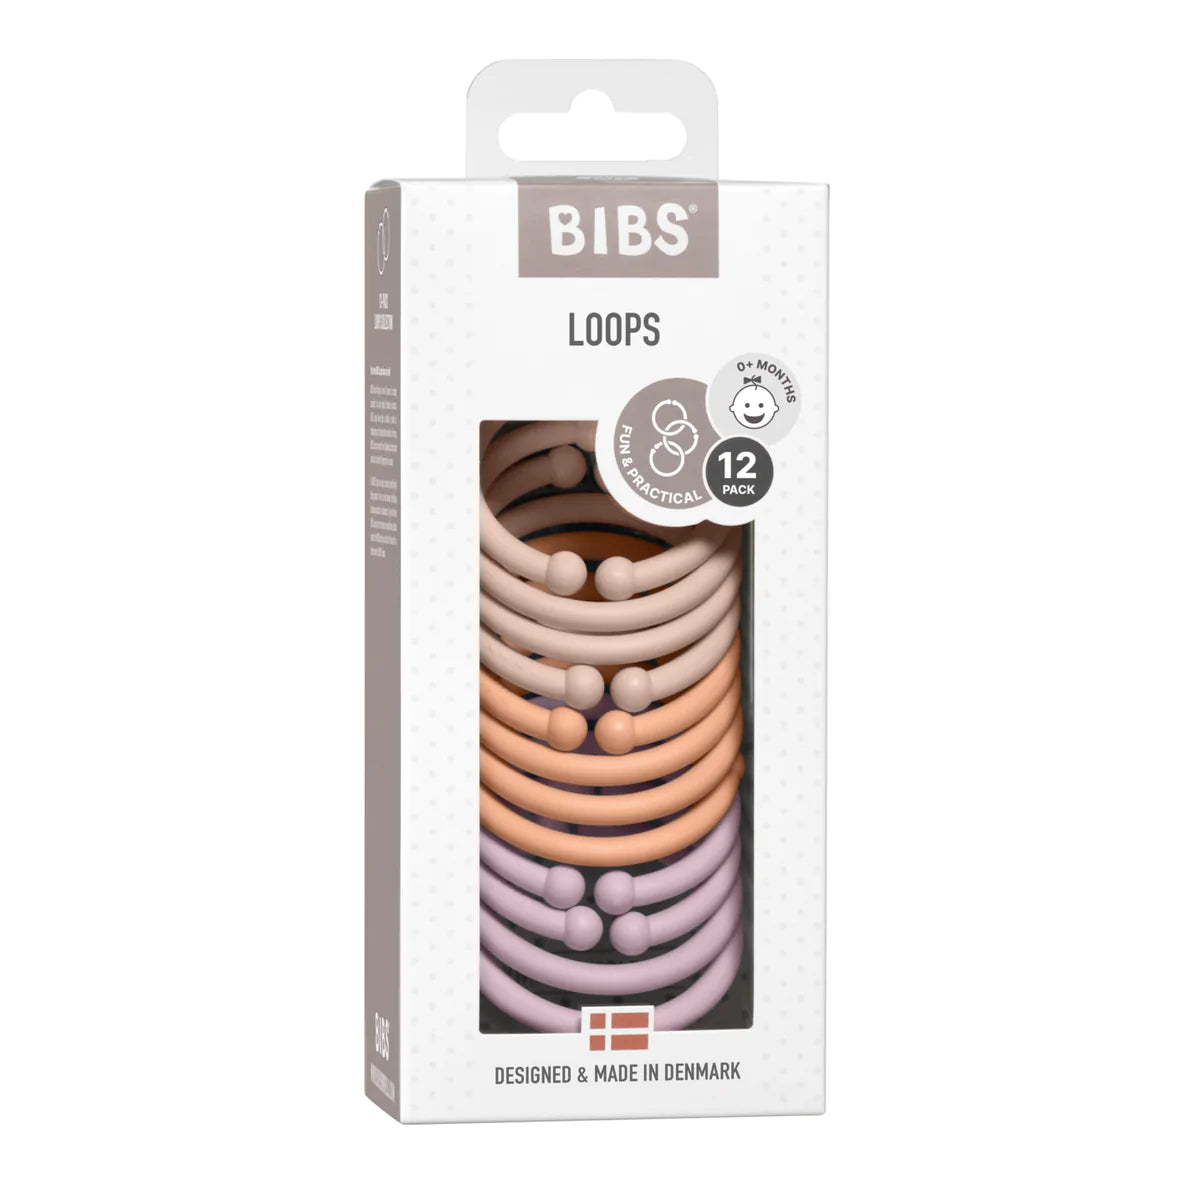 BIBS Loops 12 Pack Blush/ Peach/ Dusky Lilac